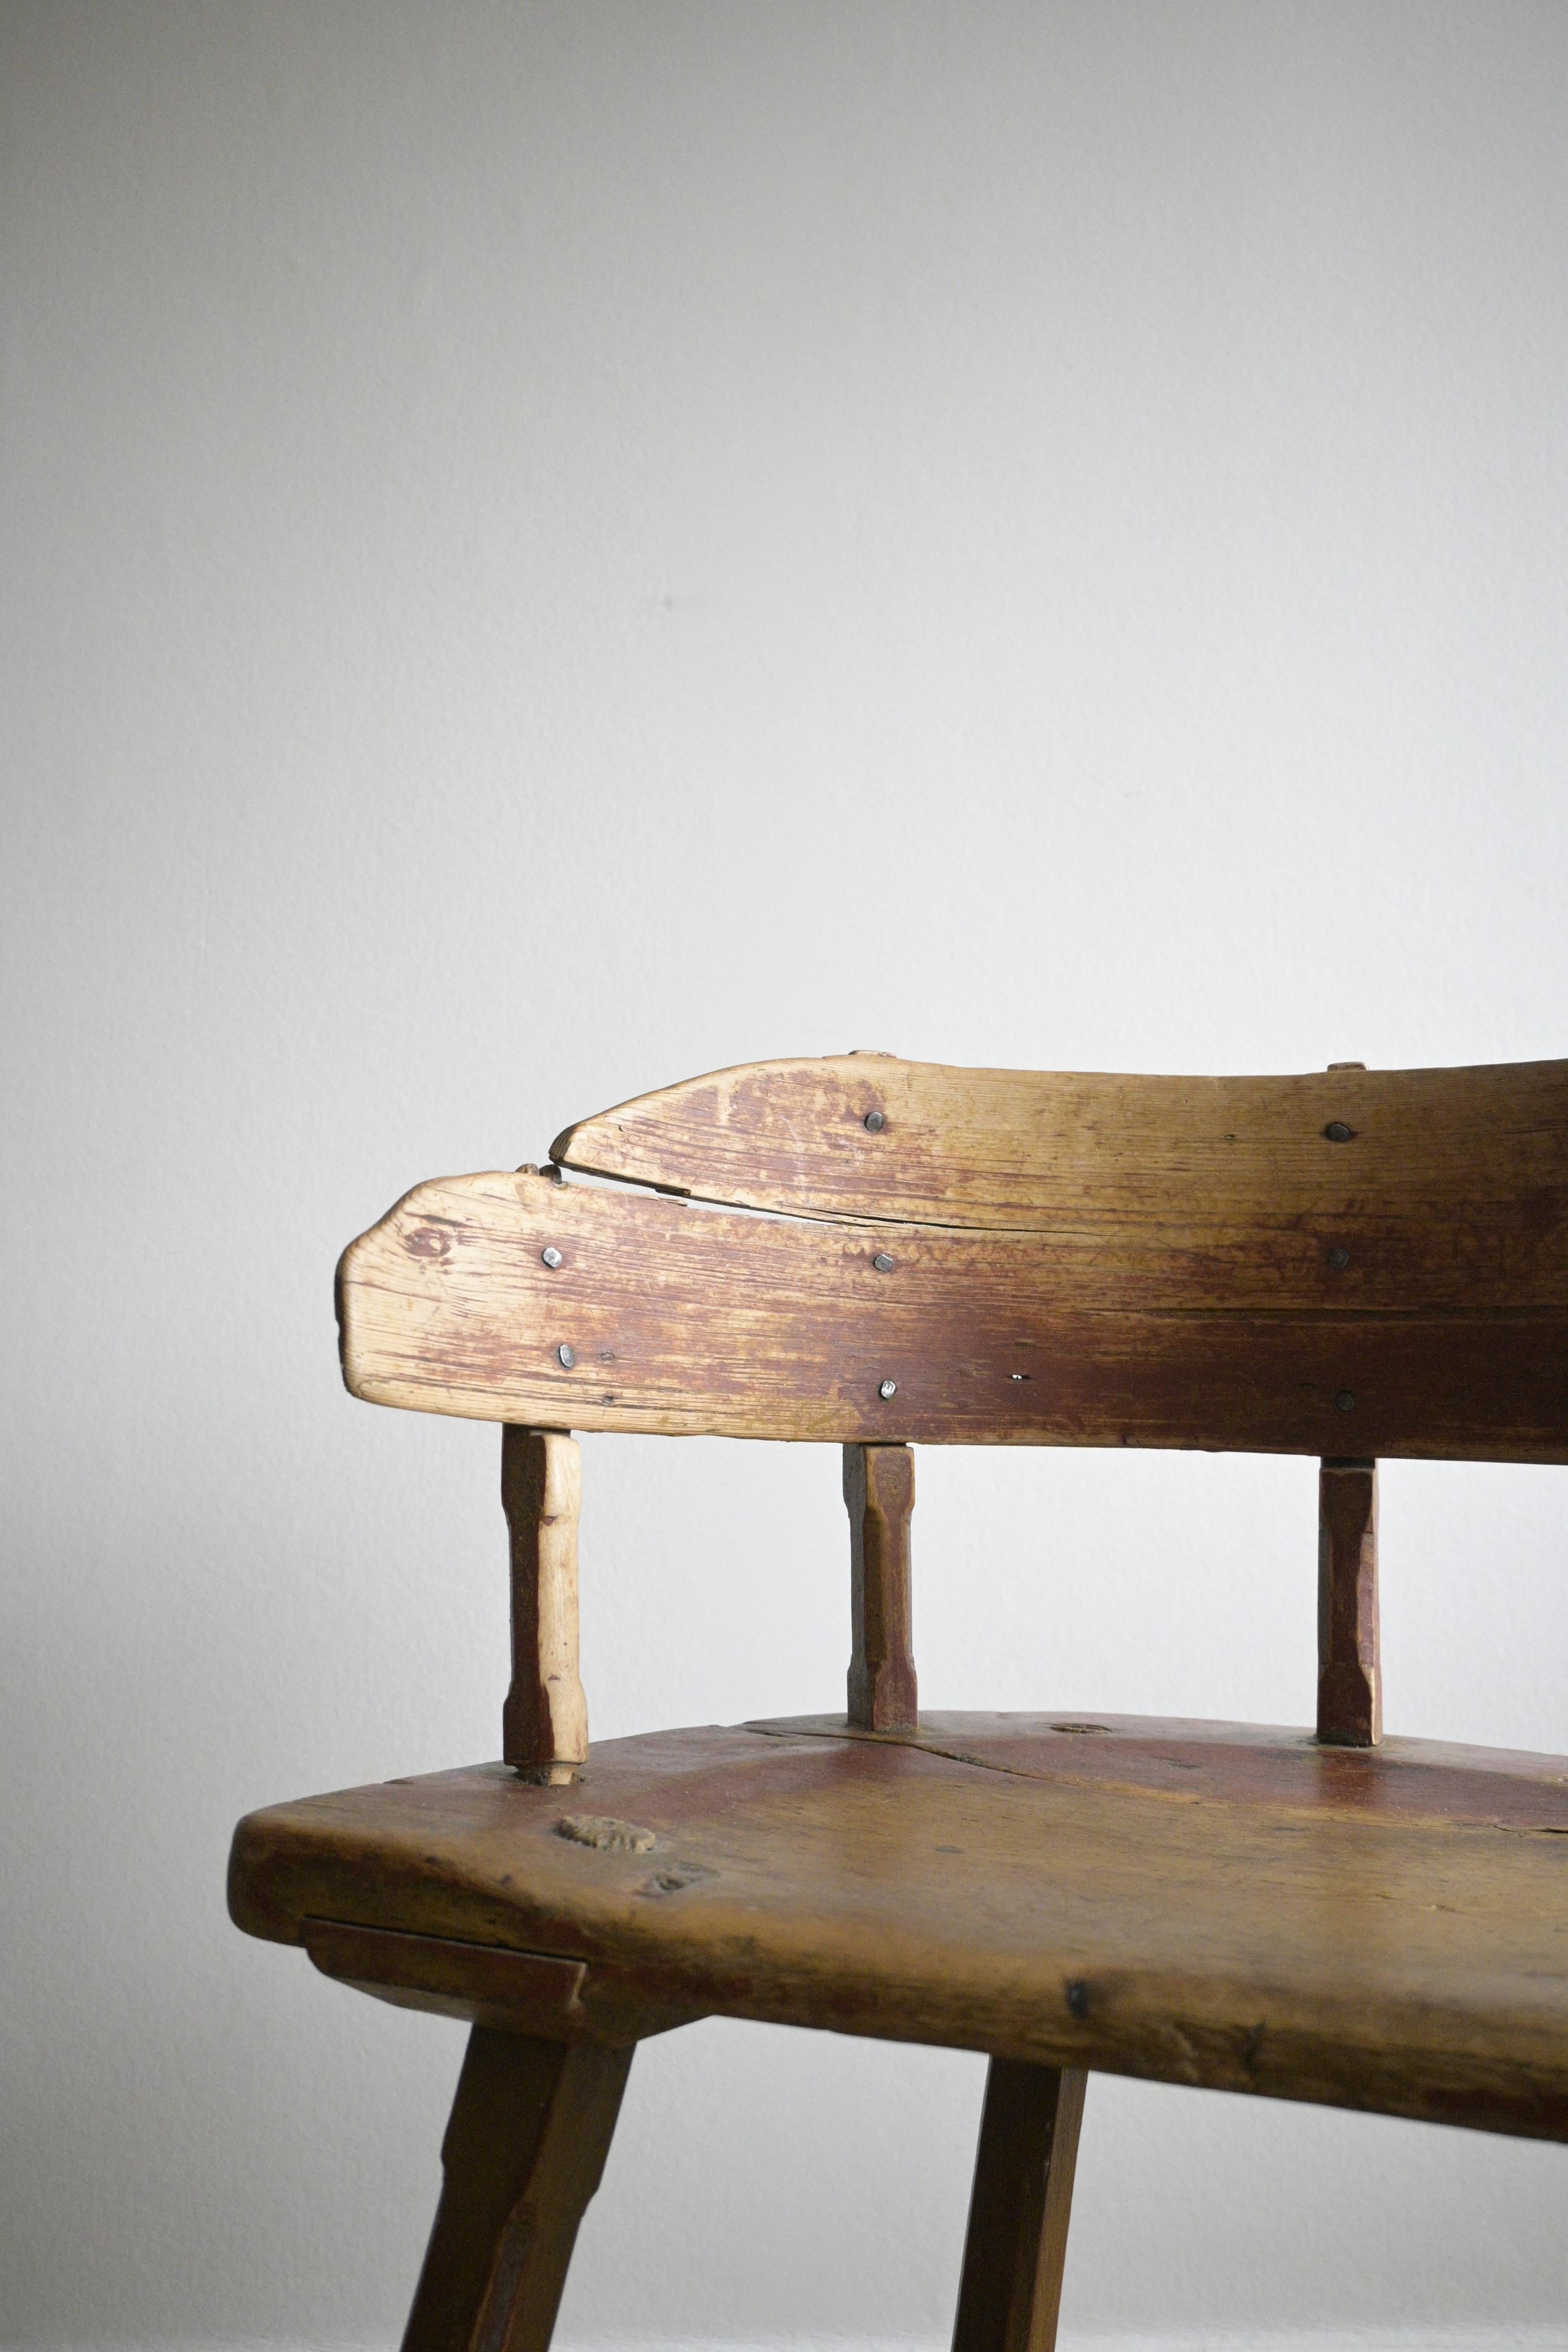 Chaise d'art populaire scandinave vers 1830-50s
Probablement de Norvège.

Magnifique patine avec une forme et un éclat étonnants.

Fabriqué en bois de bouleau.

Taille : 66 cm/25.9 inch
Profondeur : 38 cm
Largeur : 50,5 cm/19,8 pouces
Hauteur de